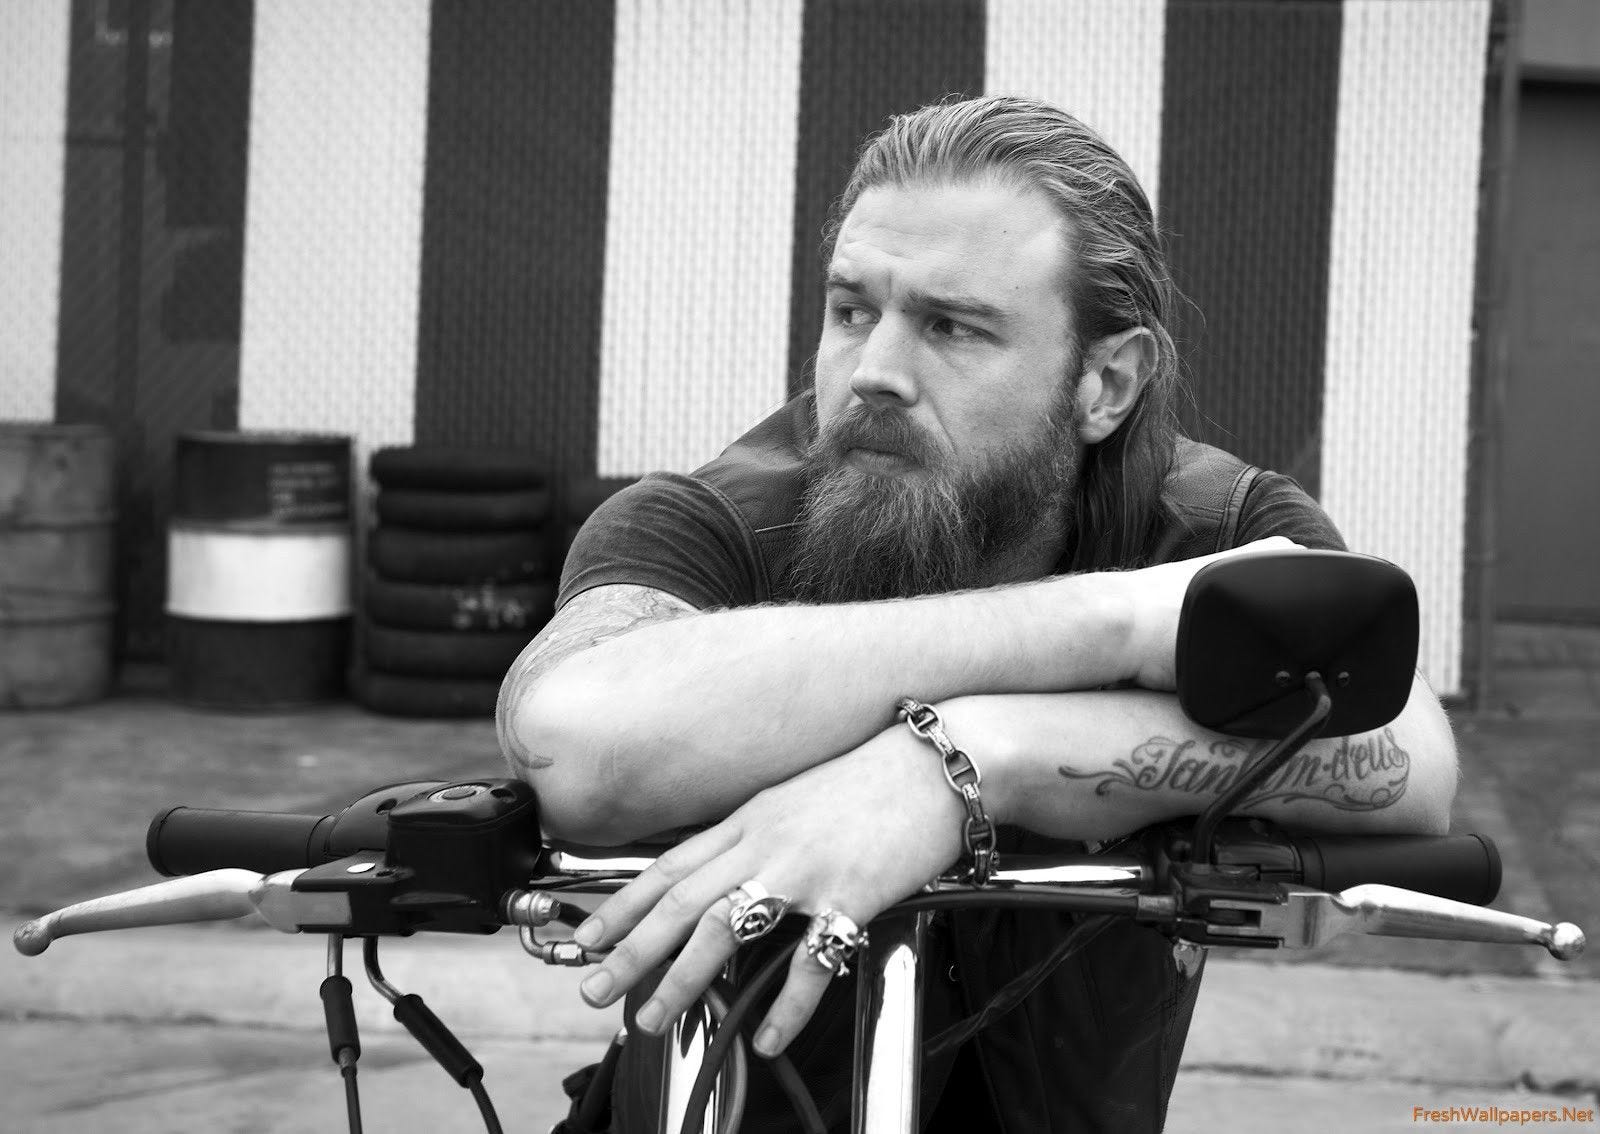 Homem branco, cabeludo e barbudo, de cara séria e anéis de caveira nos dedos, tatuado, sentado numa motocicleta, vestido de preto com colete de couro.